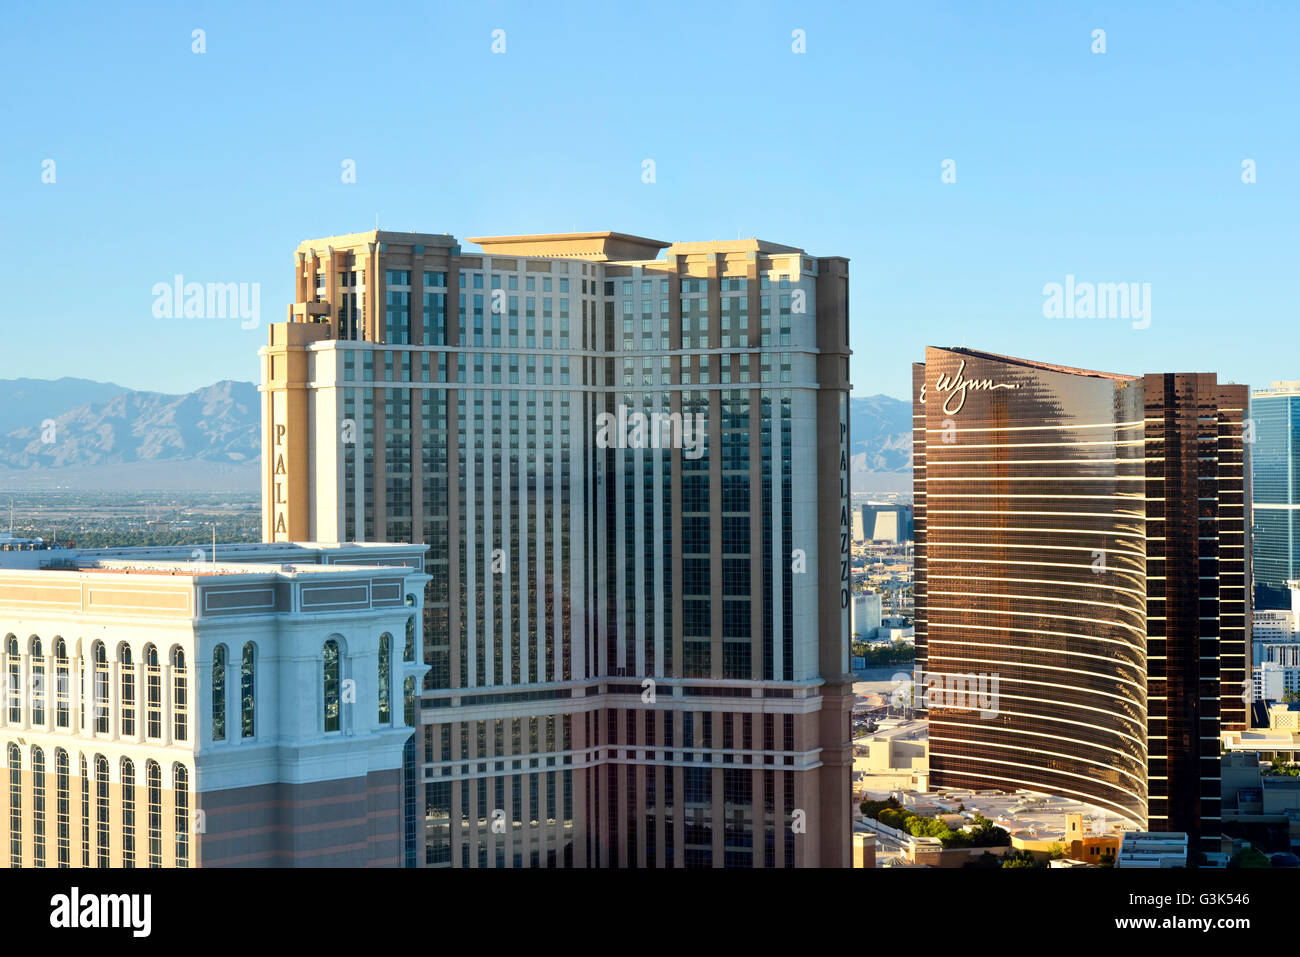 Une vue aérienne de la Bande de Las Vegas comme vu à partir de la 'High Roller' a 550 ft Farris attraction touristique de roue Banque D'Images